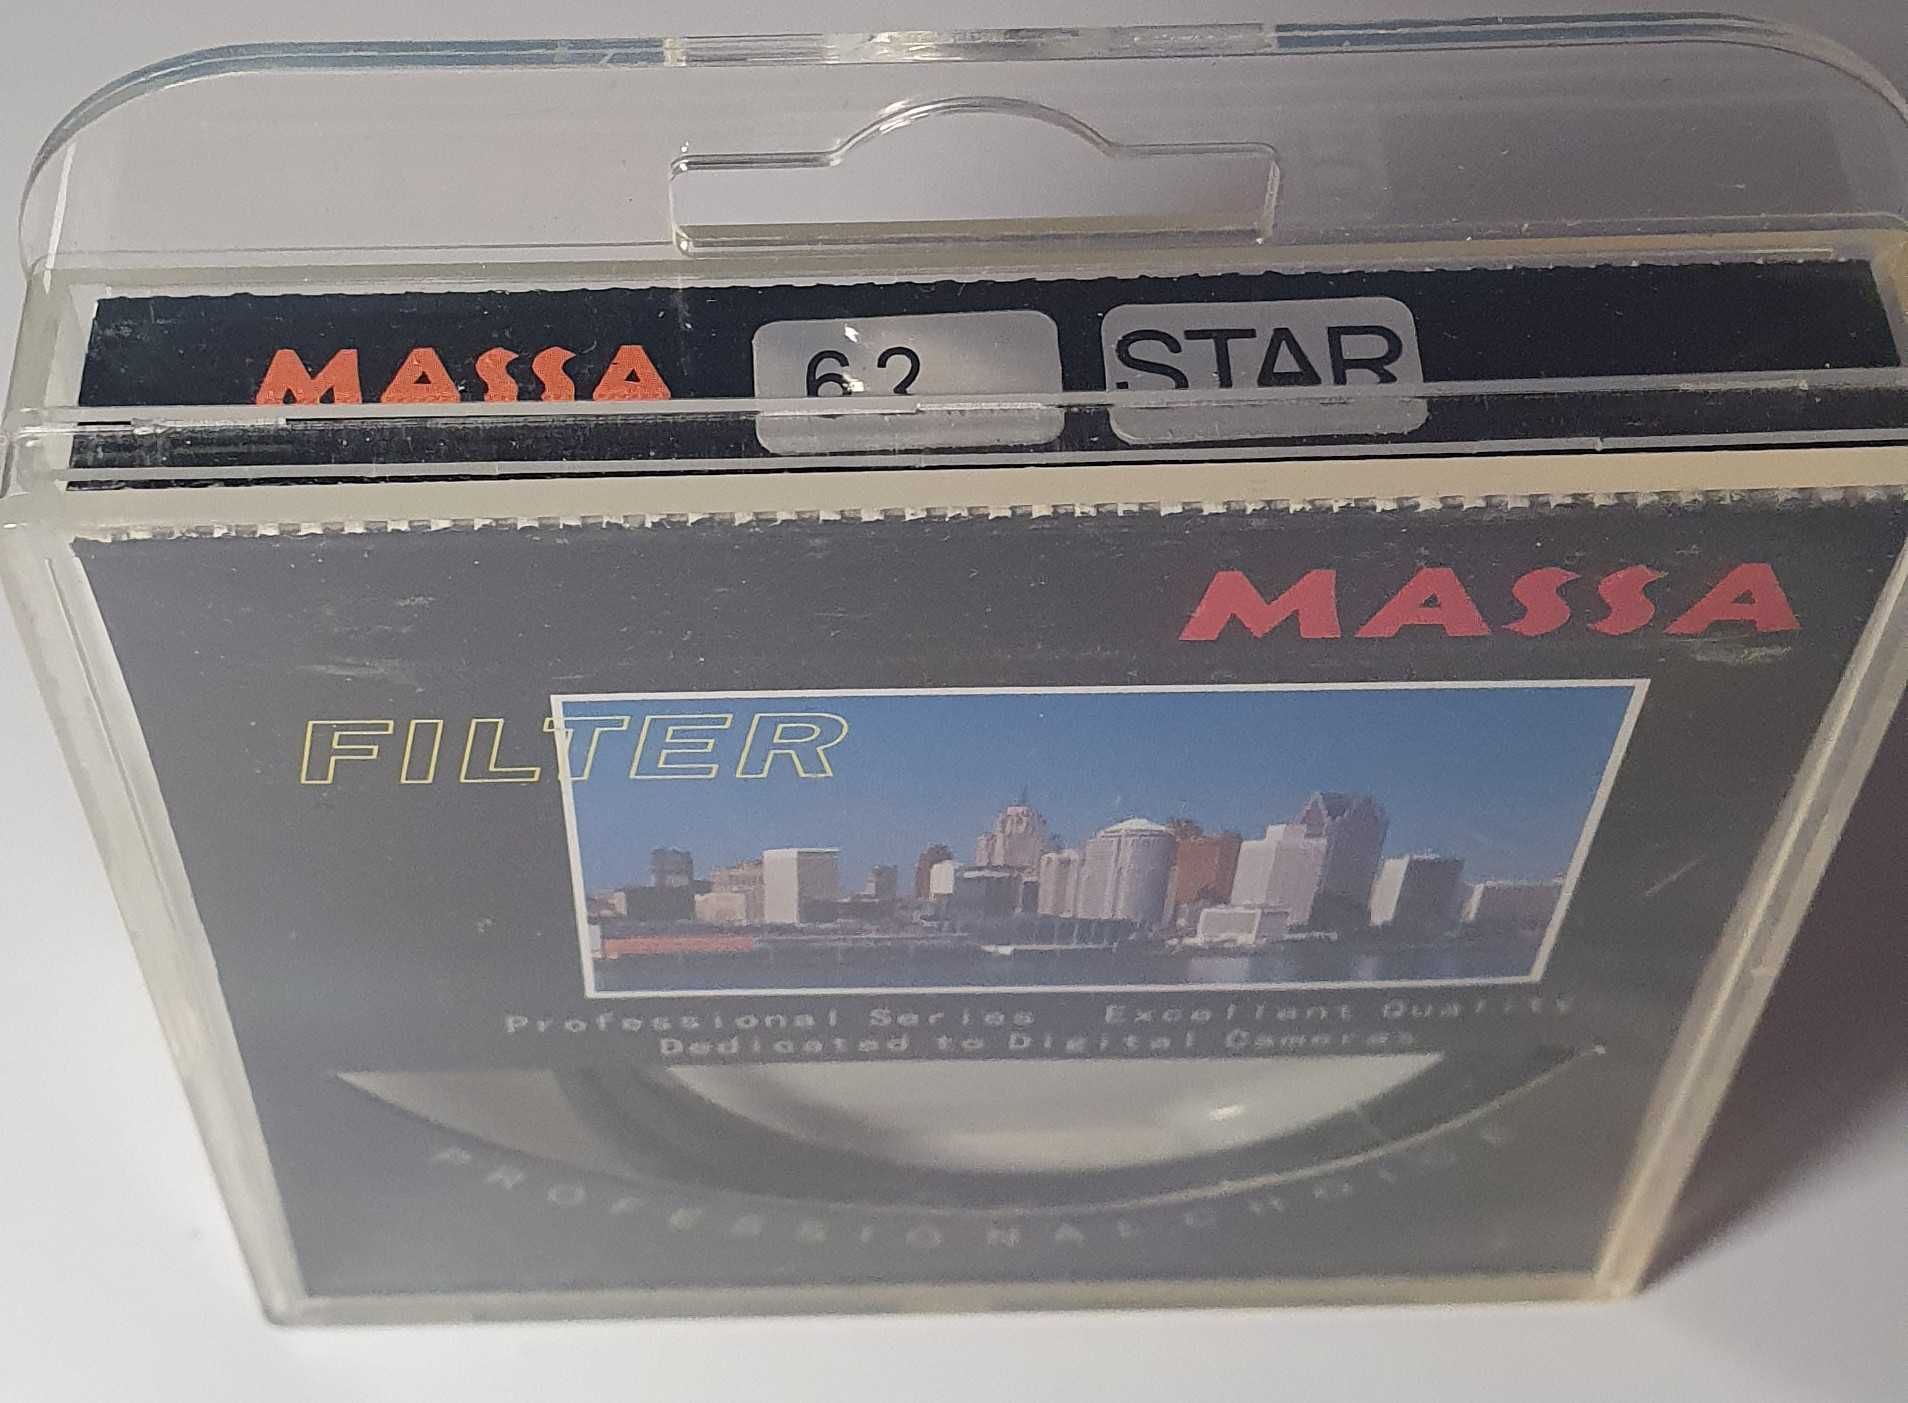 Filtr MASSA STAR 62mm